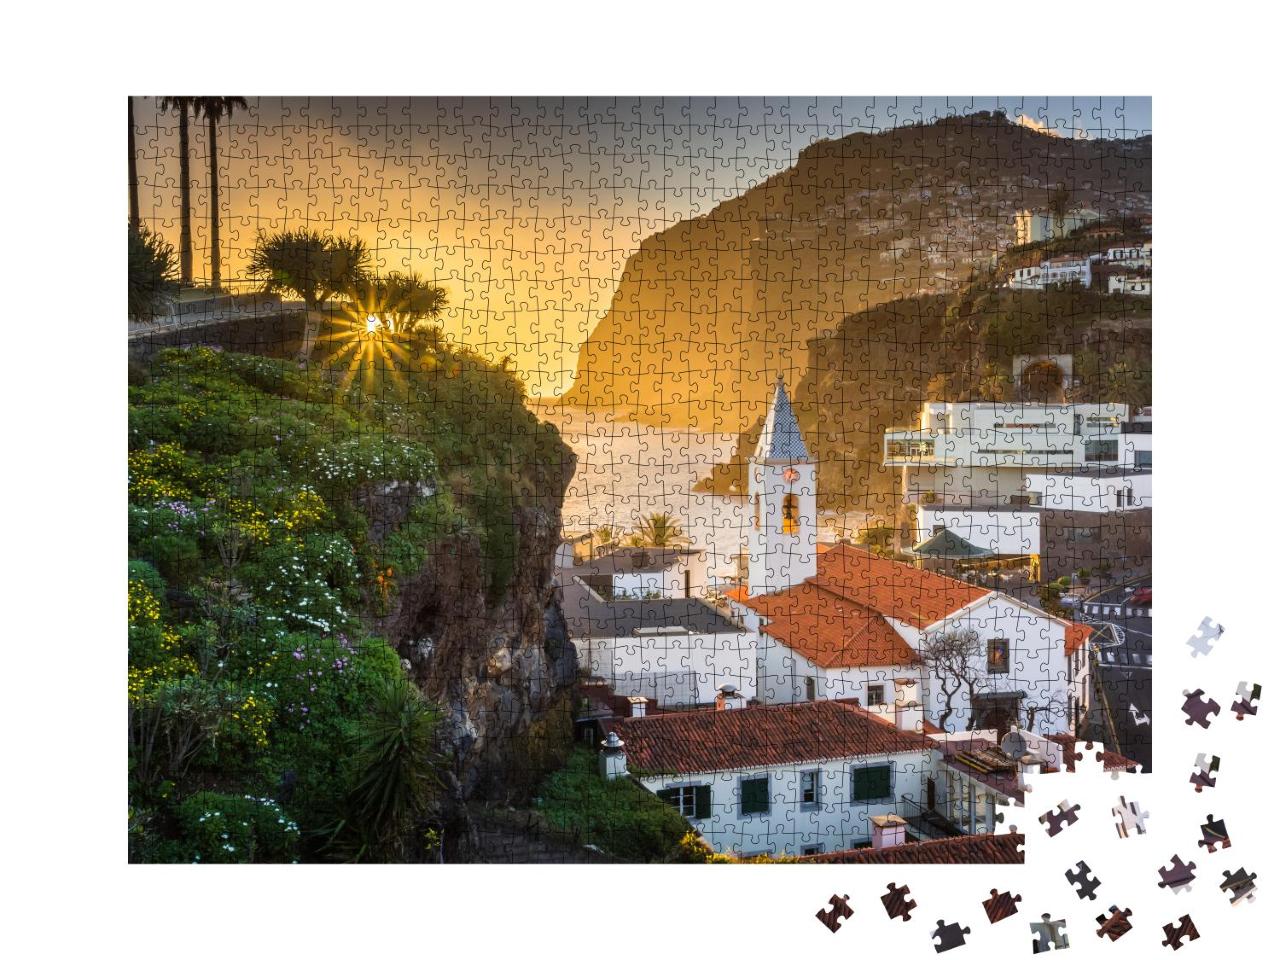 Puzzle 1000 Teile „Sonnenuntergang über Camara de Lobos, Madeira“